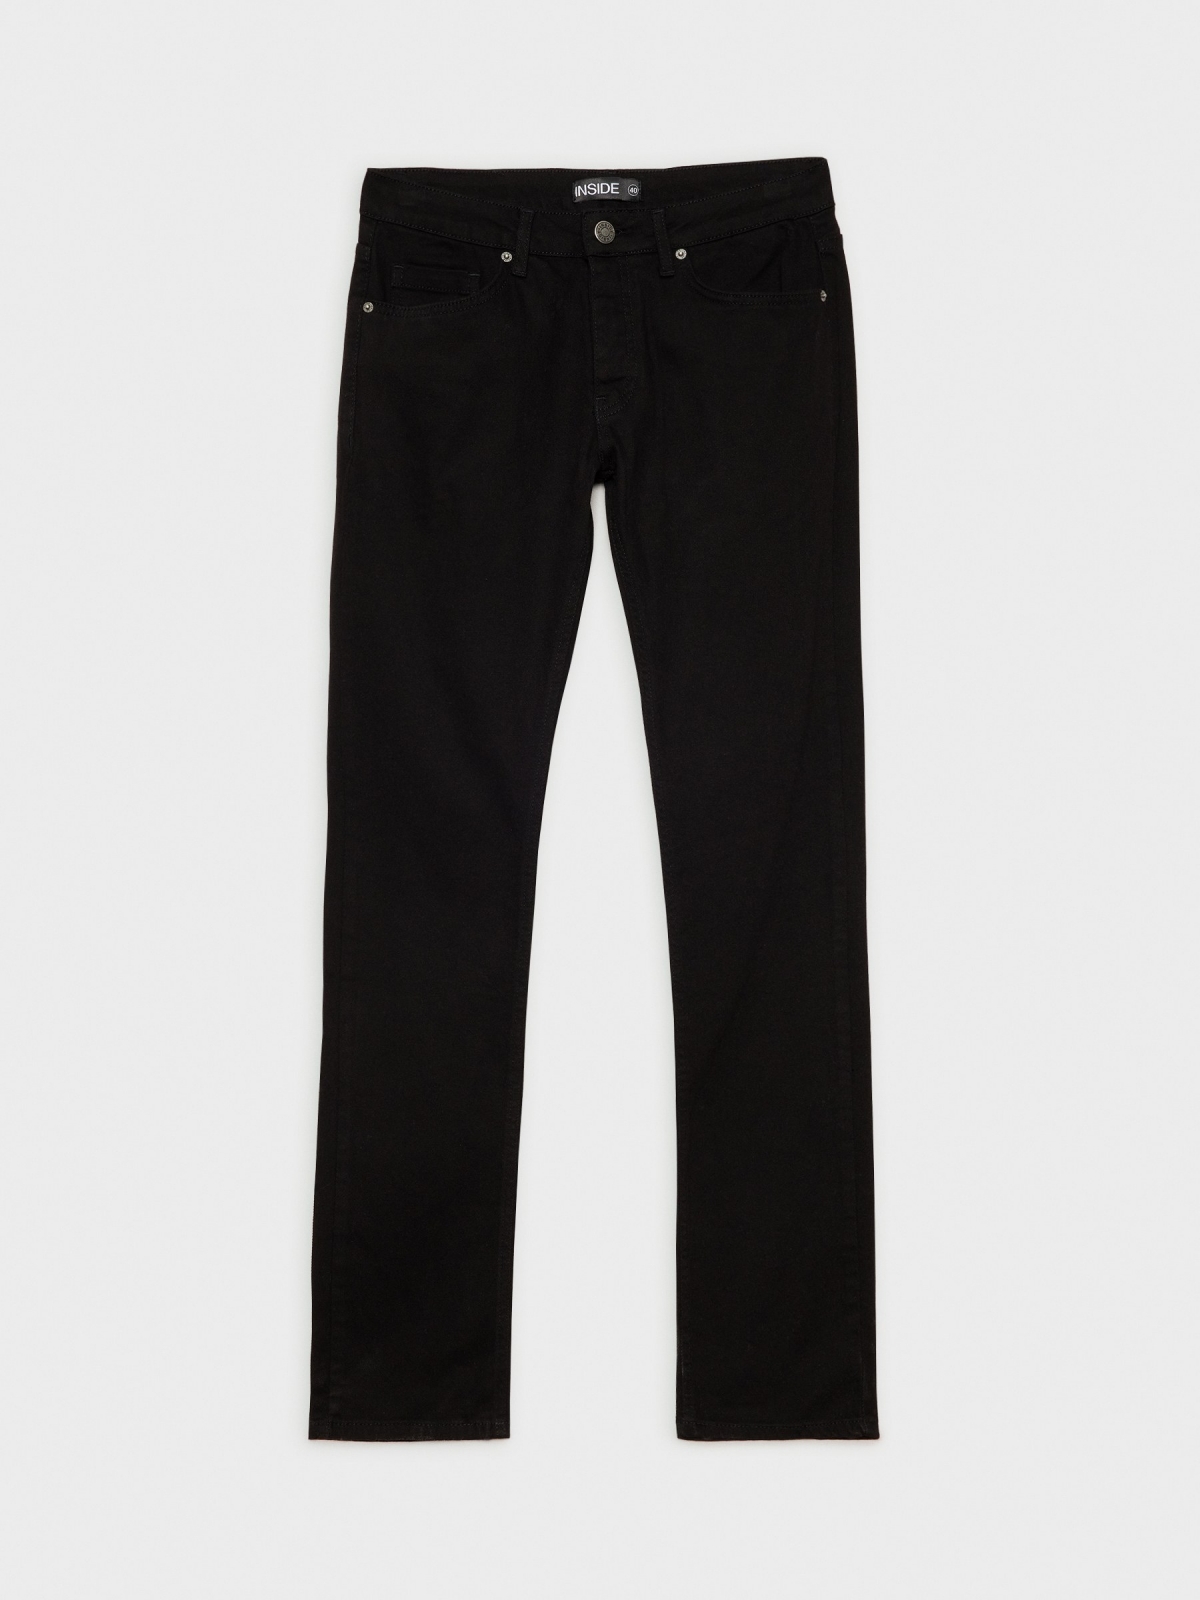  Jeans básico de cinco bolsos preto